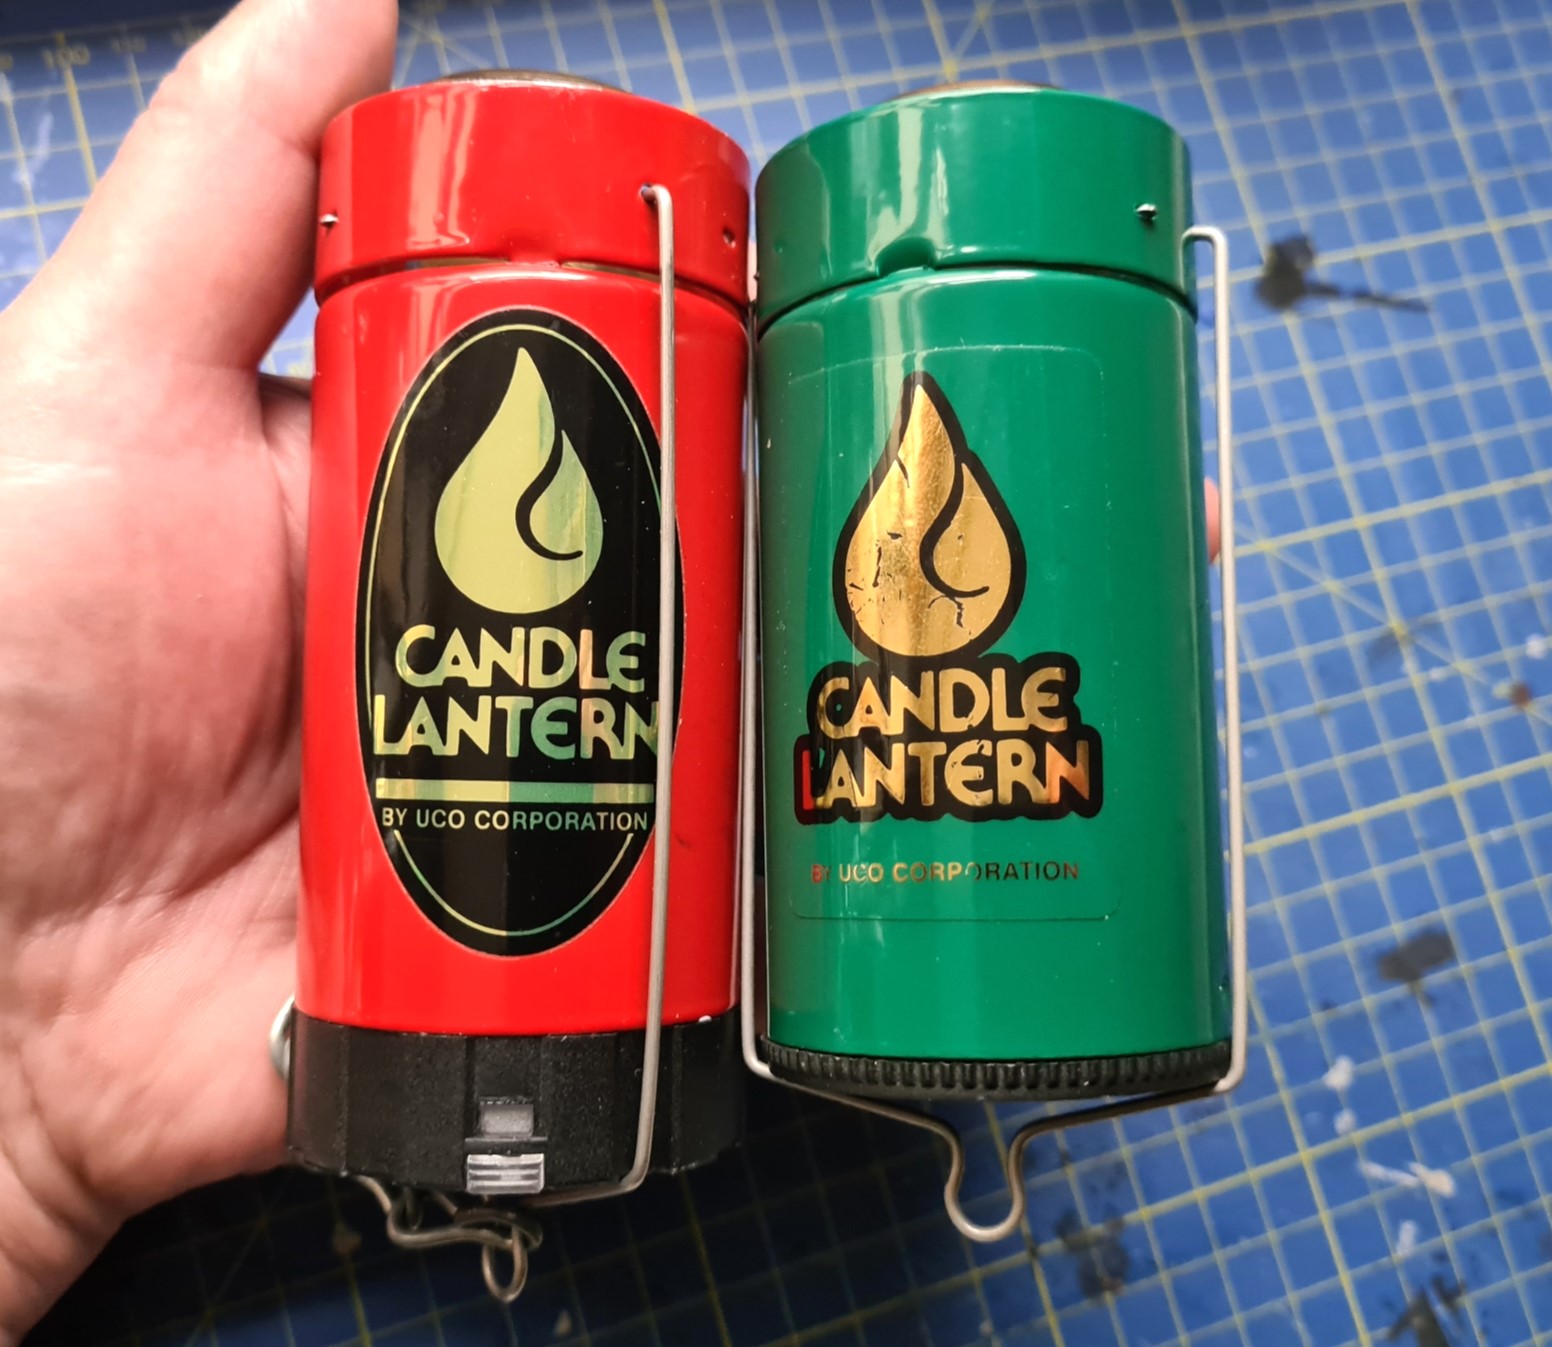 UCO Original+LED Candle Lantern and Original Candle Lantern